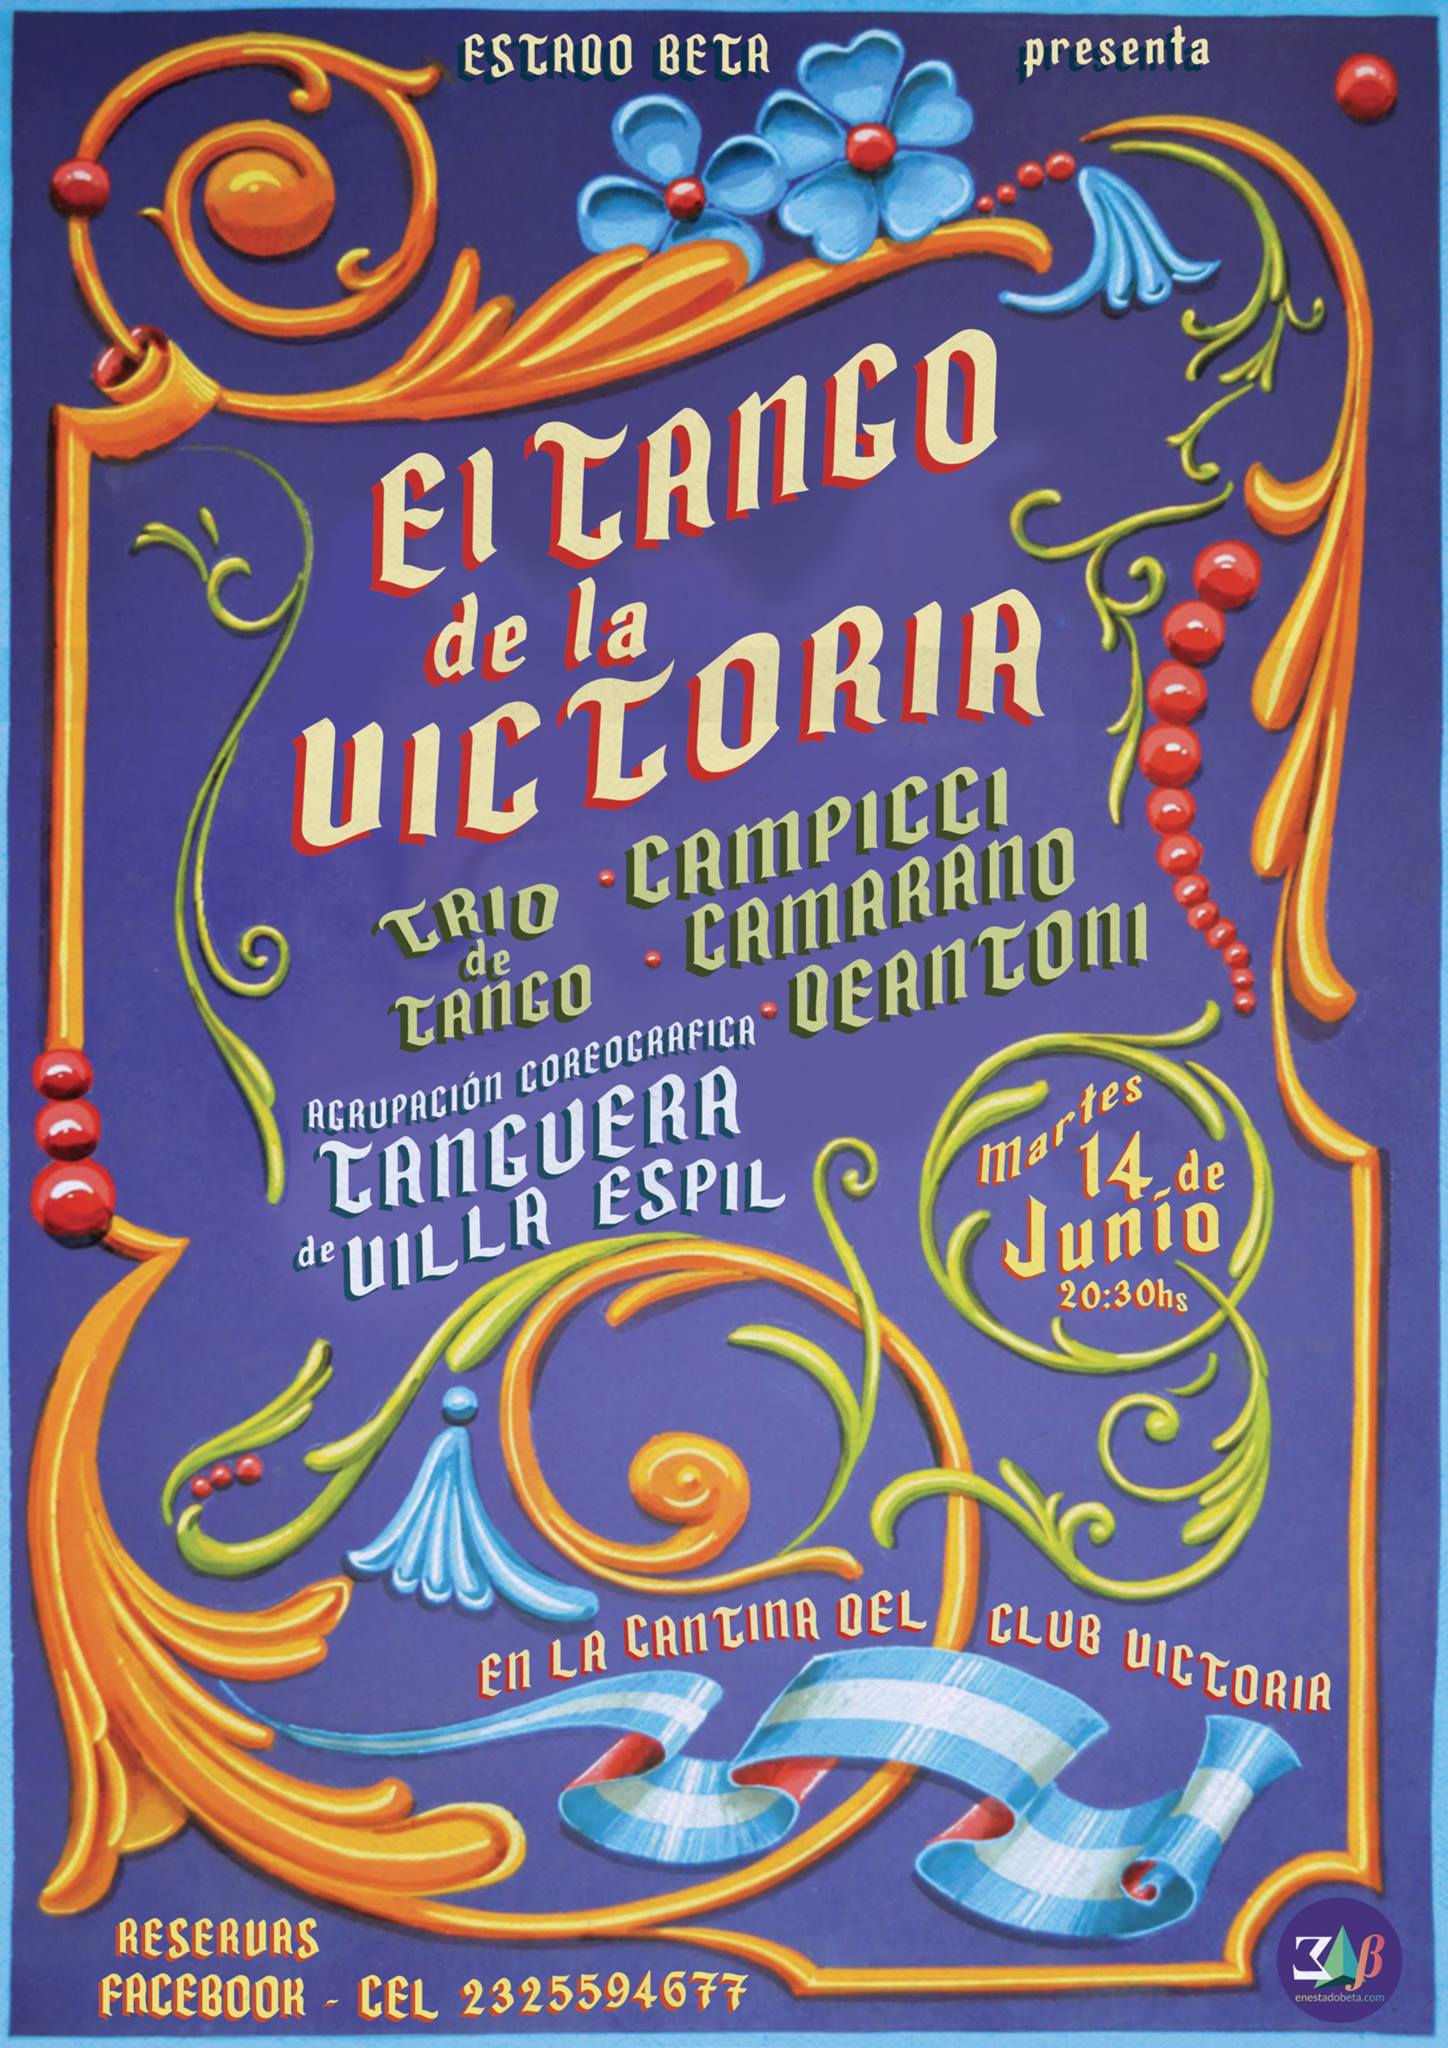 Afiche para evento "El Tango de la Victoria" - Diseño 